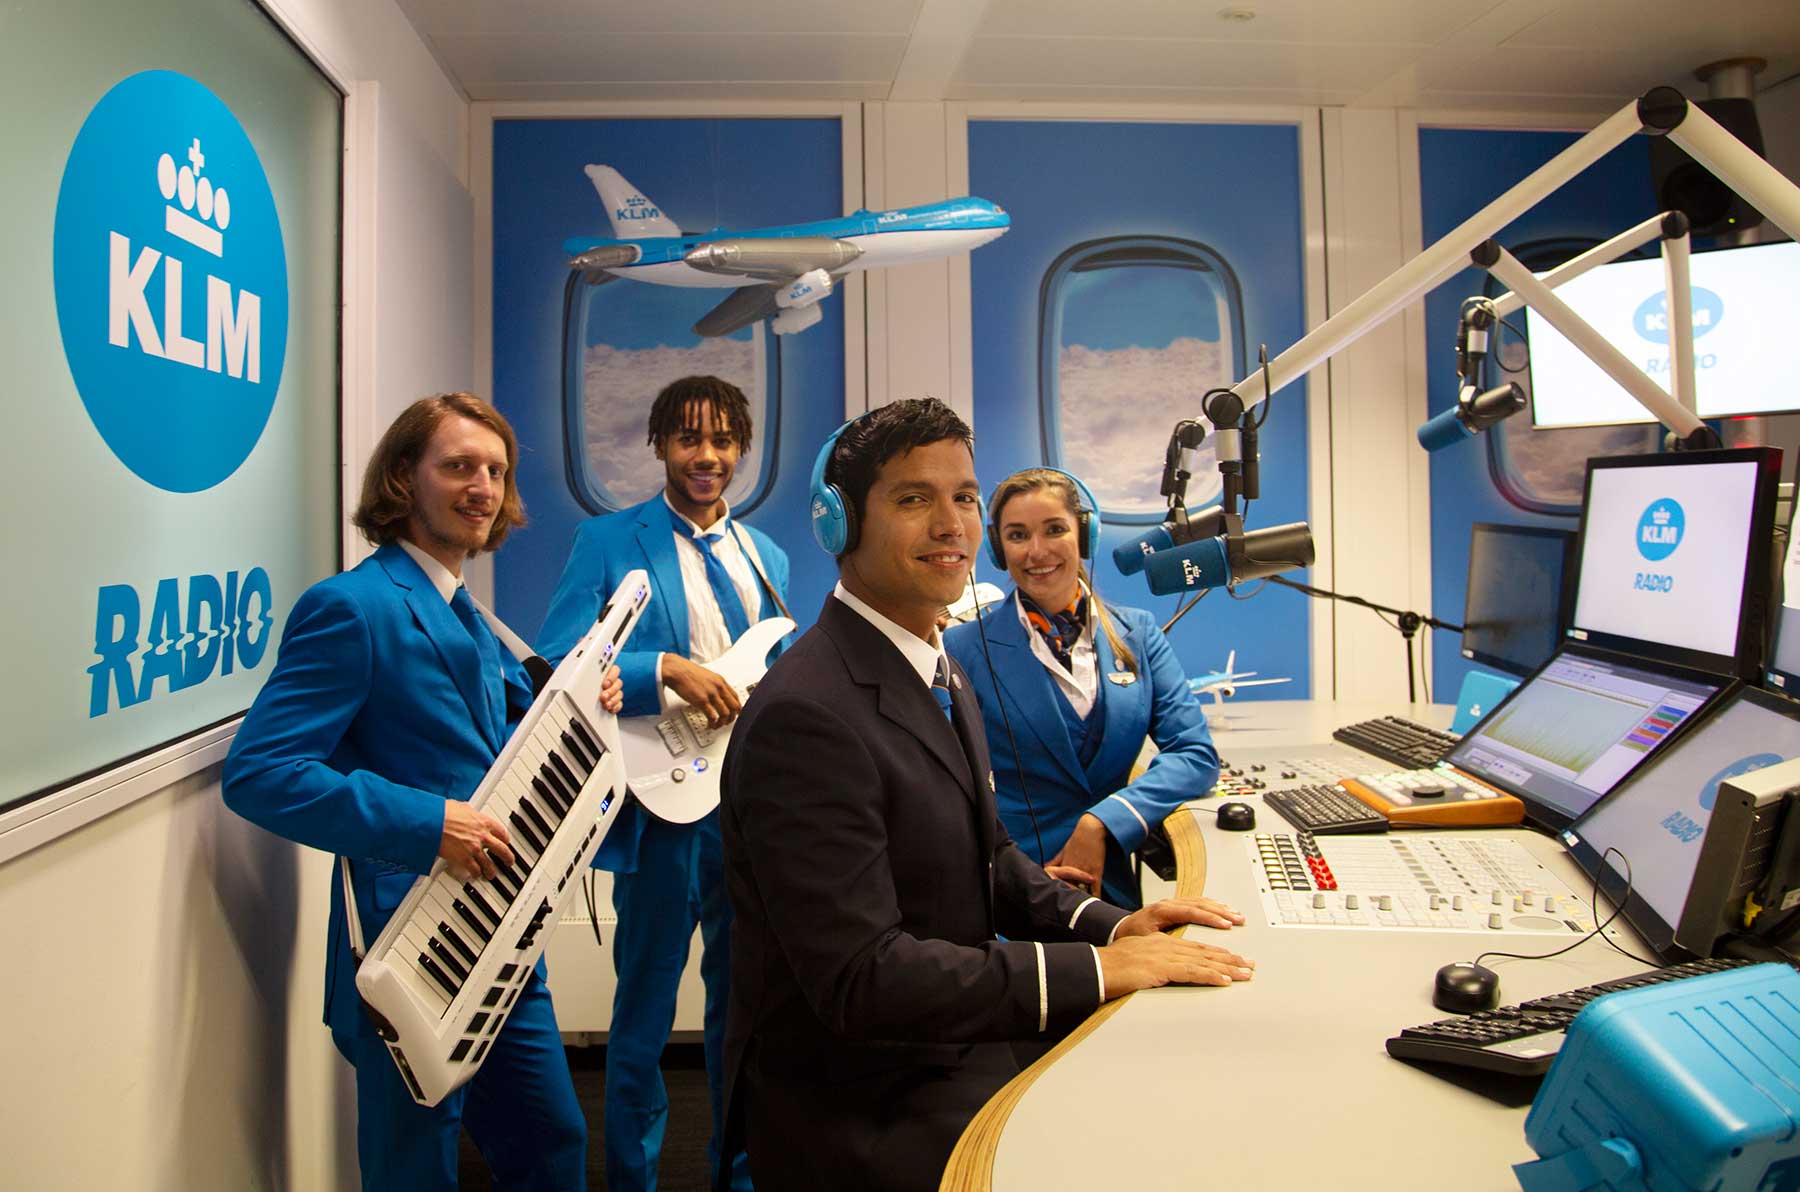 Ist KLM eine Bank, ein Restaurant oder ein Radiosender? KLM-radiosender-bank-restaurant-fluglinie_01 